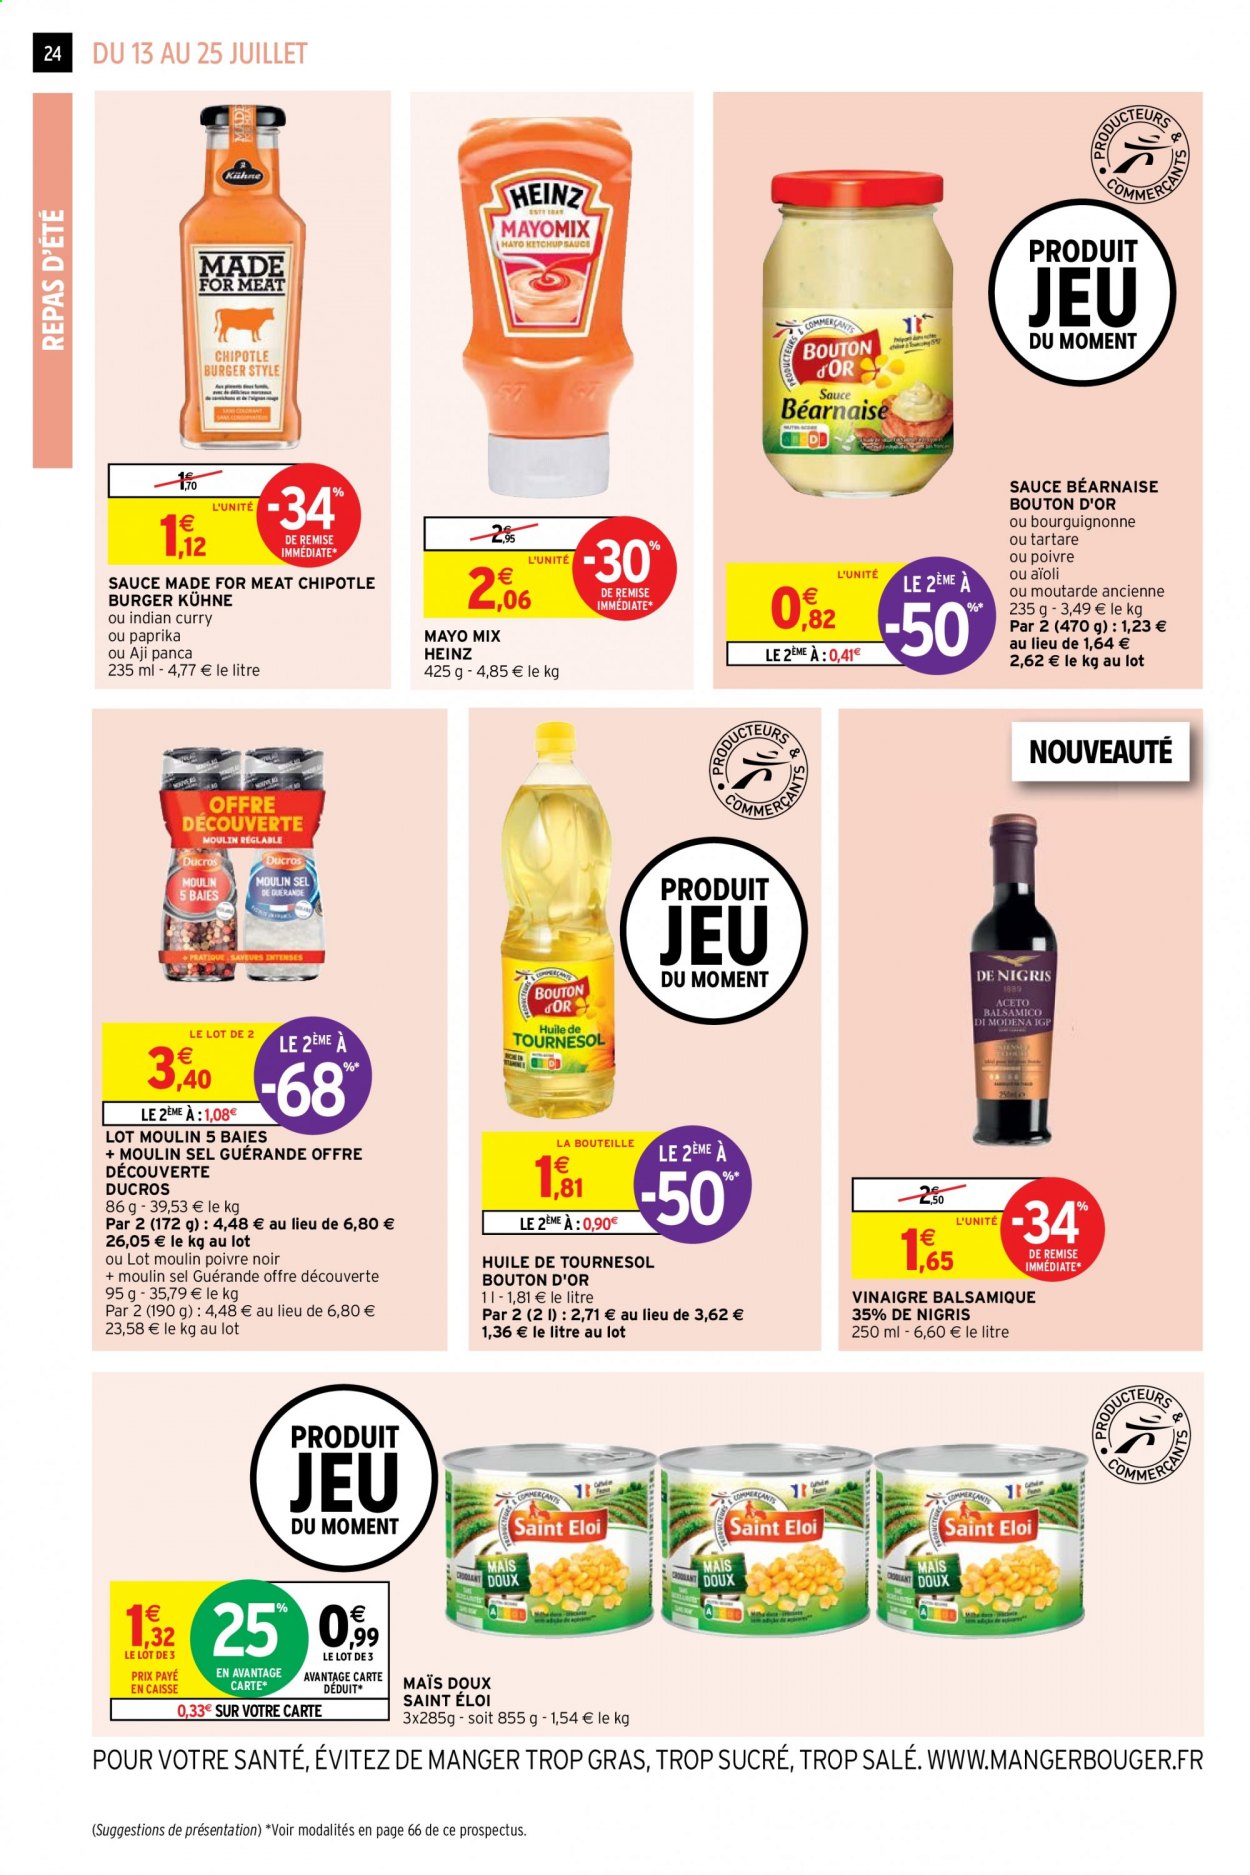 thumbnail - Catalogue Intermarché Hyper - 13/07/2021 - 25/07/2021 - Produits soldés - jeu, Heinz, ketchup, Béarnaise, huile, vinaigre, vinaigre balsamique. Page 24.